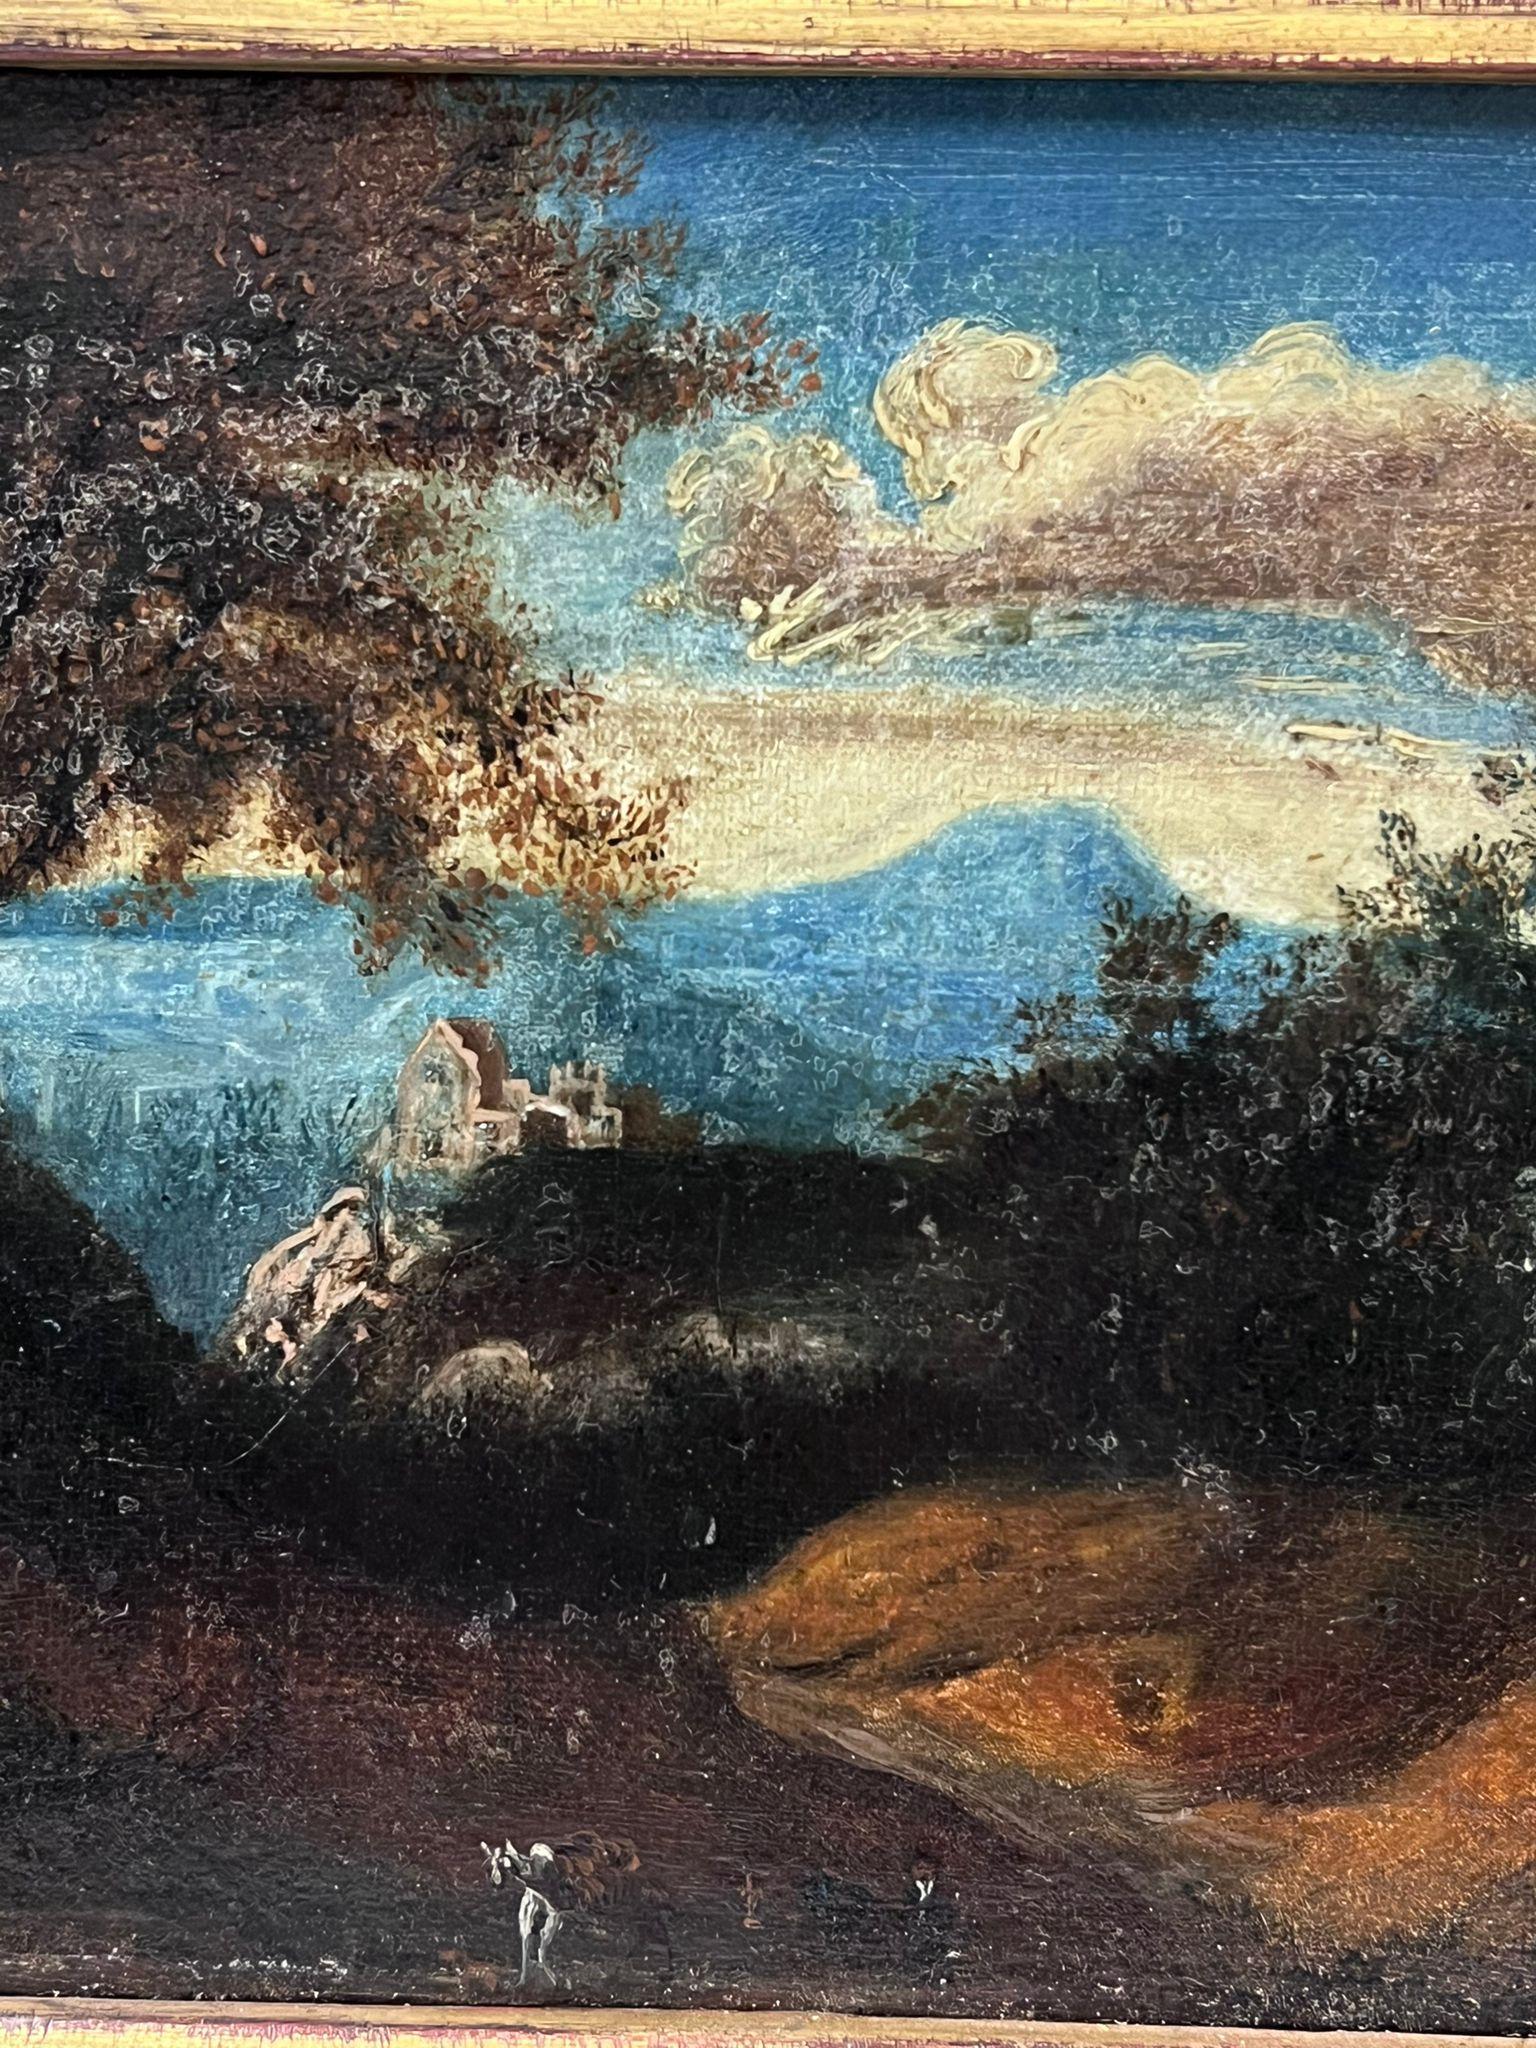 Figur in arkadischer Landschaft
Französische Schule, 18. Jahrhundert
Öl auf Leinwand, gerahmt
Gerahmt: 10 x 12 Zoll
Leinwand : 6,5 x 9 Zoll
Provenienz: Privatsammlung
Zustand: sehr guter und gesunder Zustand 